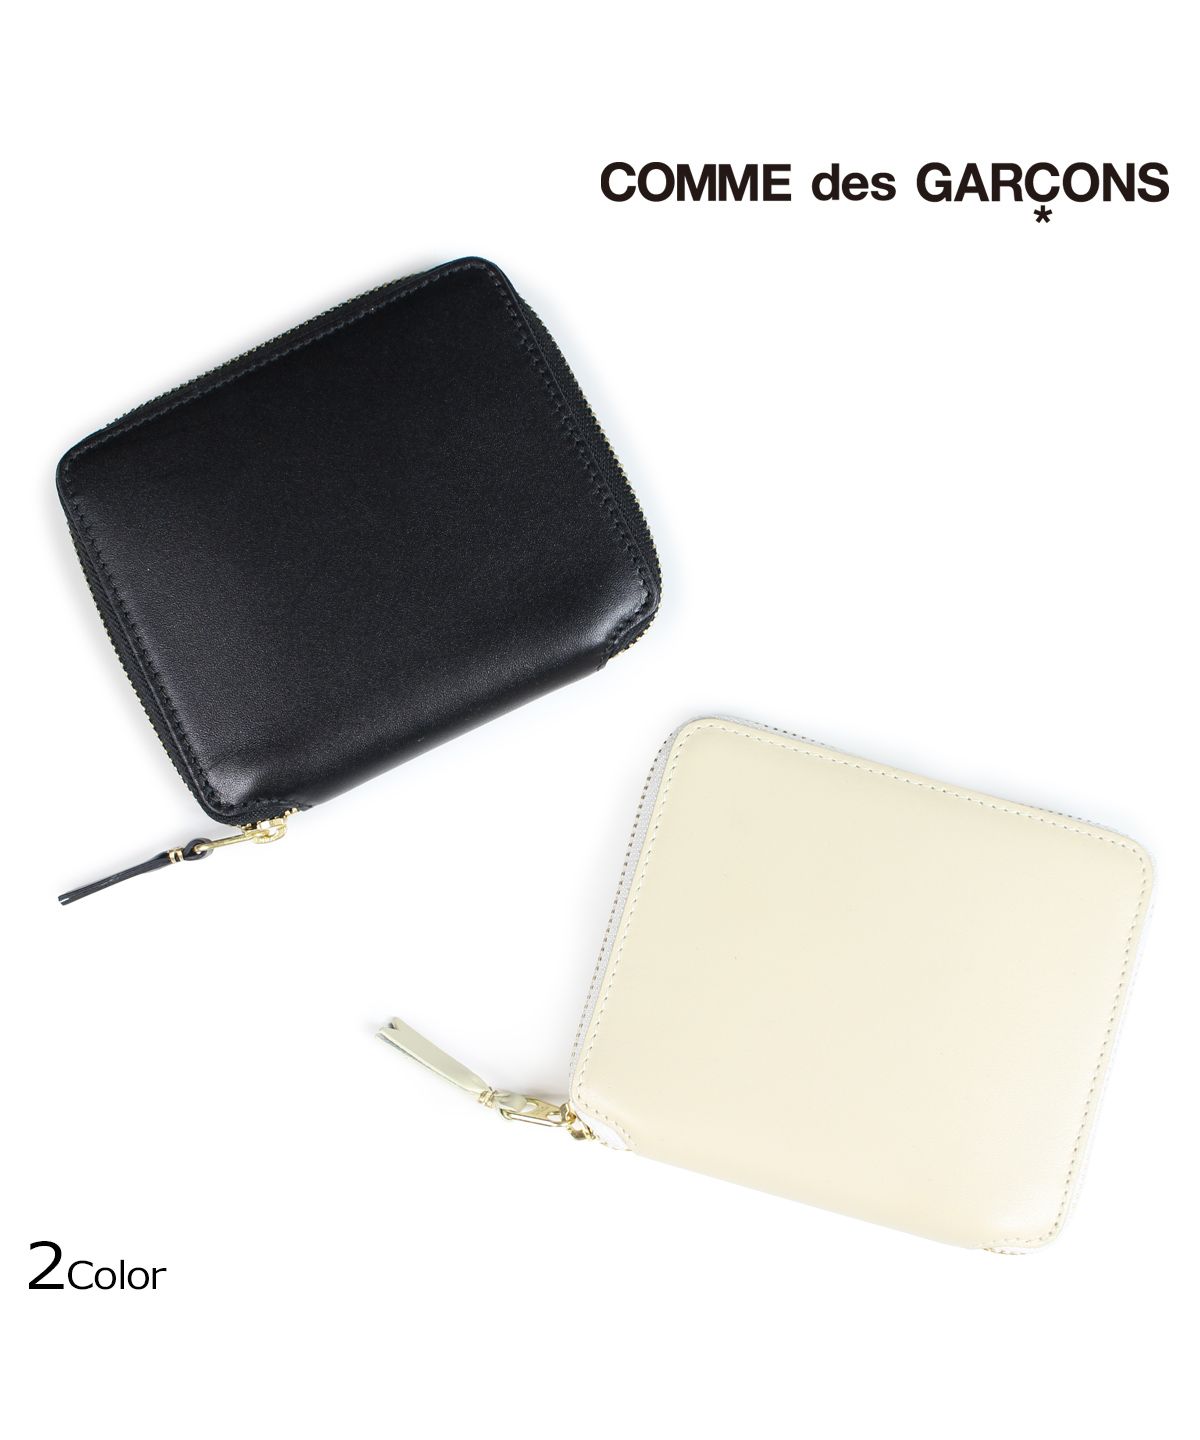 コムデギャルソン COMME des GARCONS 財布 二つ折り メンズ レディース ラウンドファスナー ブラック オフ ホワイト 黒 白  SA2100 [